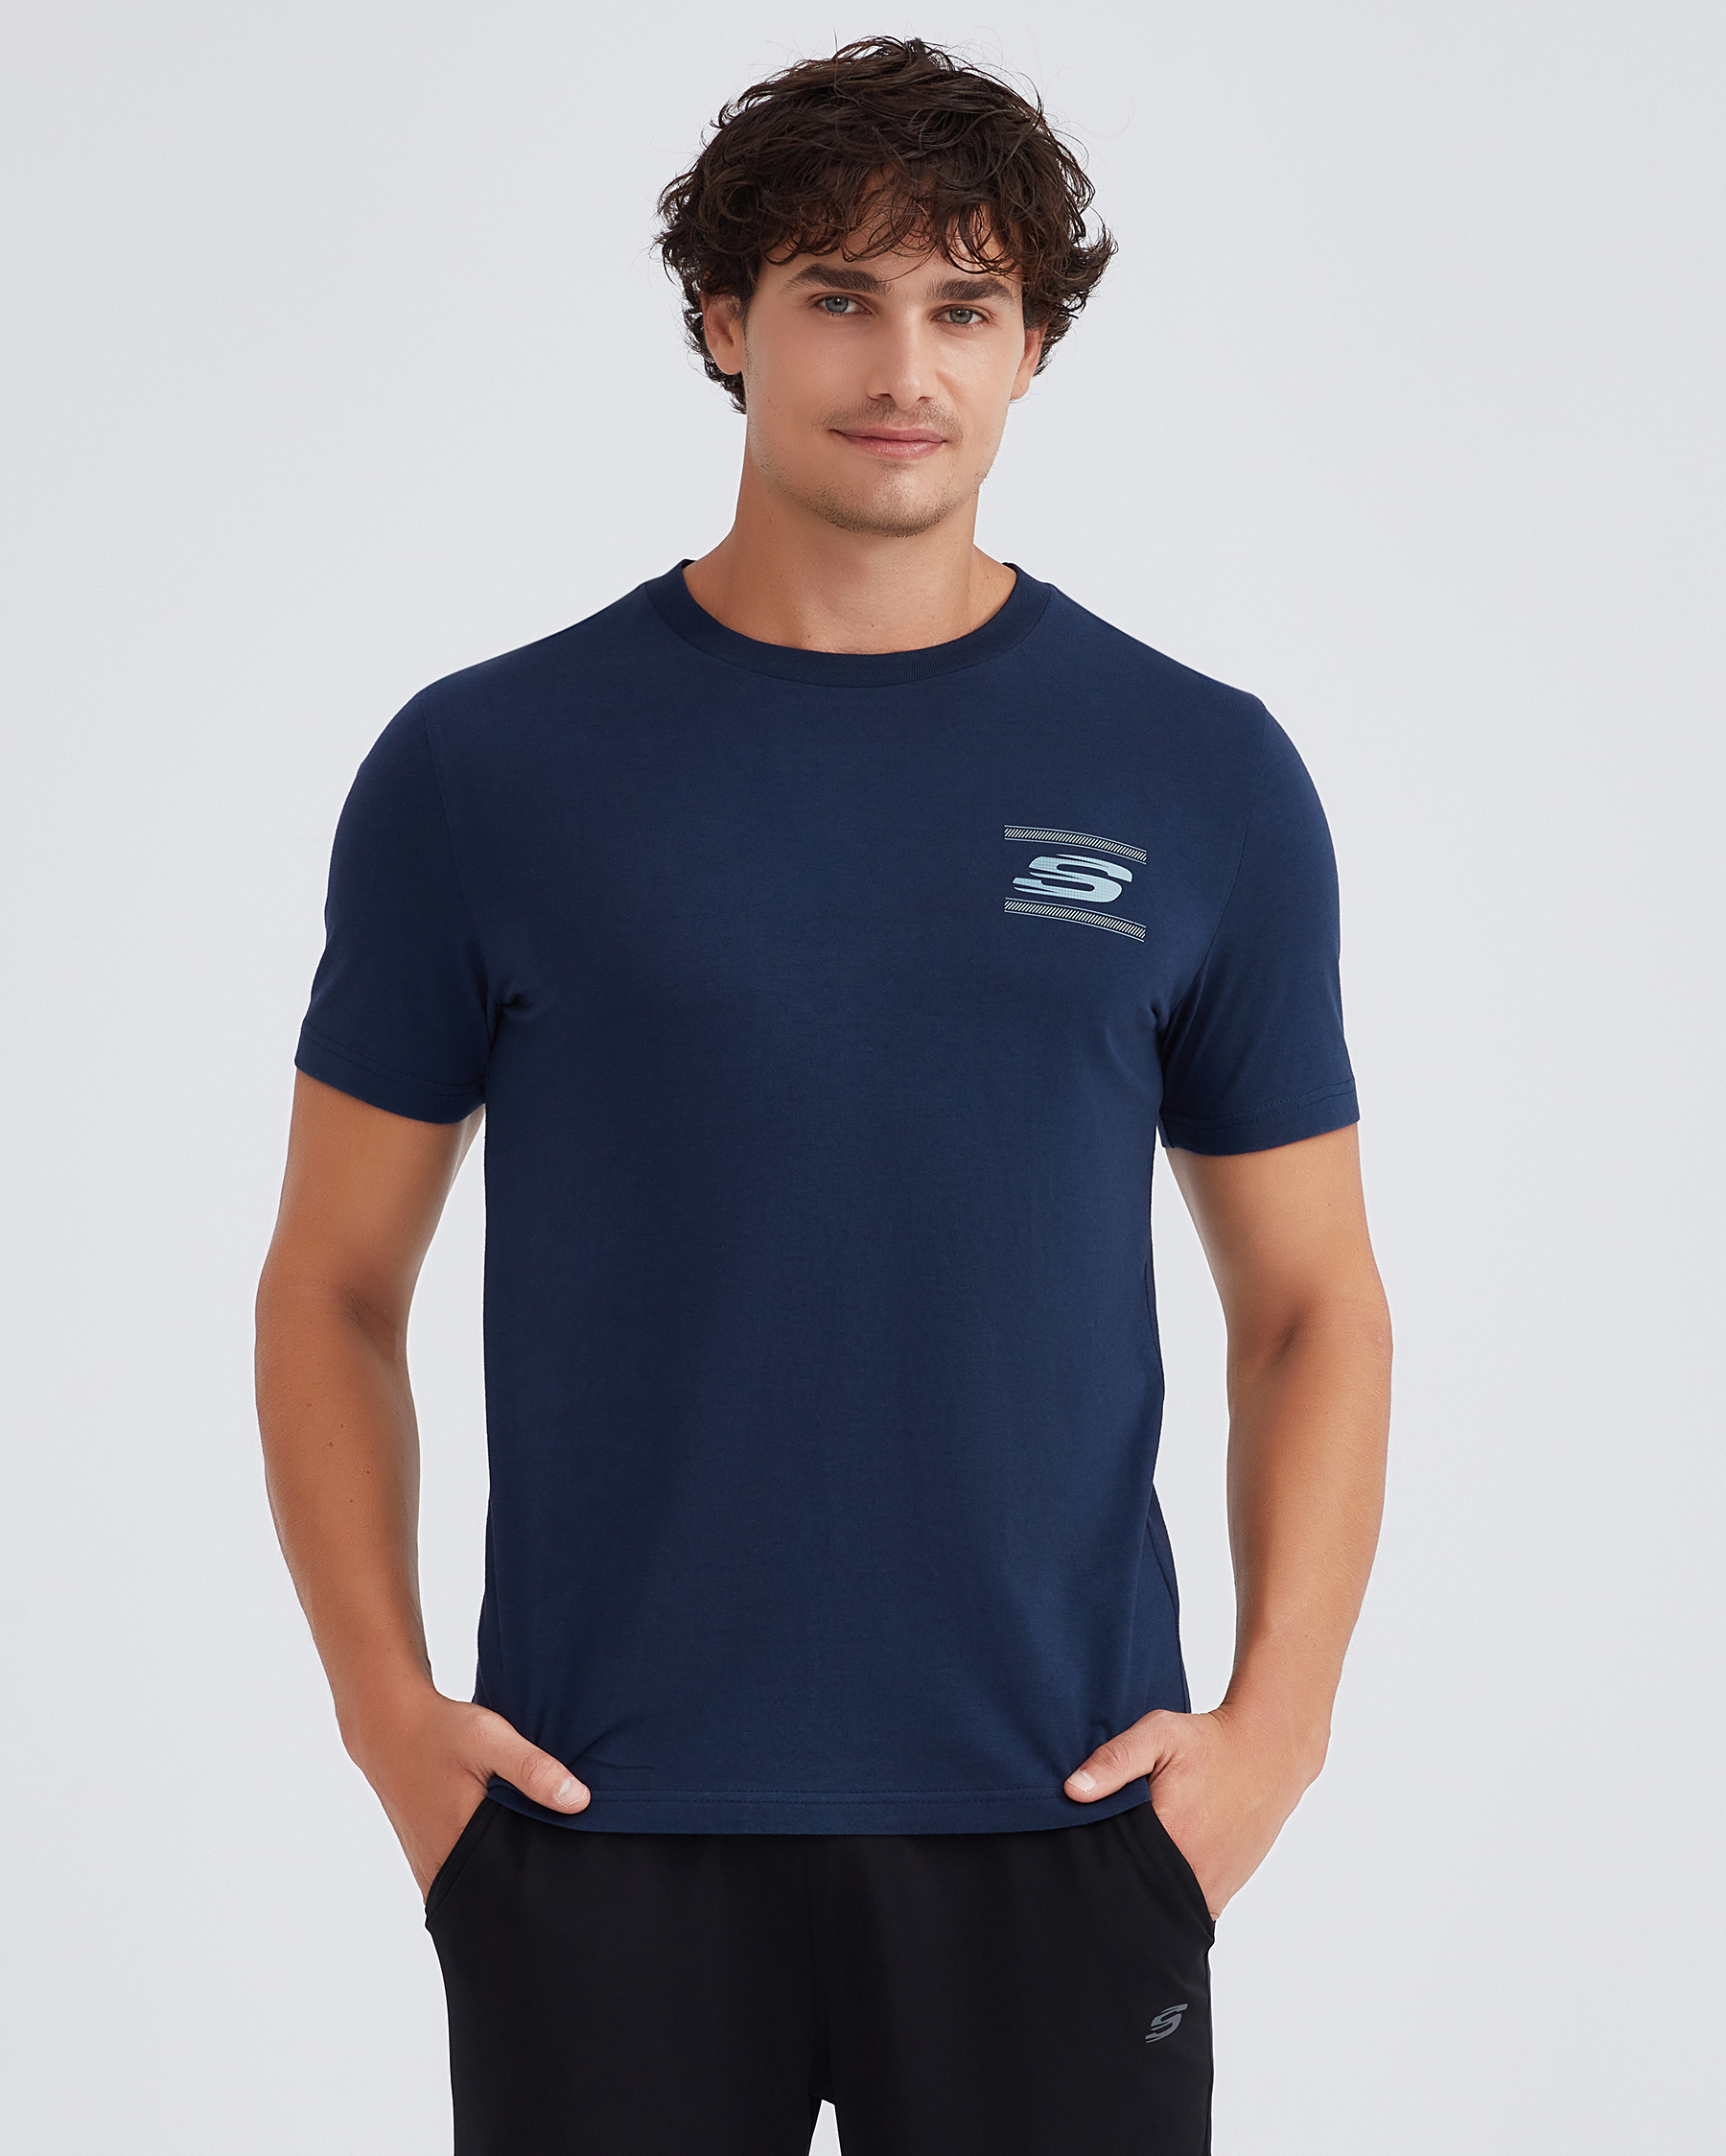 Skechers M Graphic Lacivert T-shirt Neck Crew S232339-410 Tee Tshirt Erkek